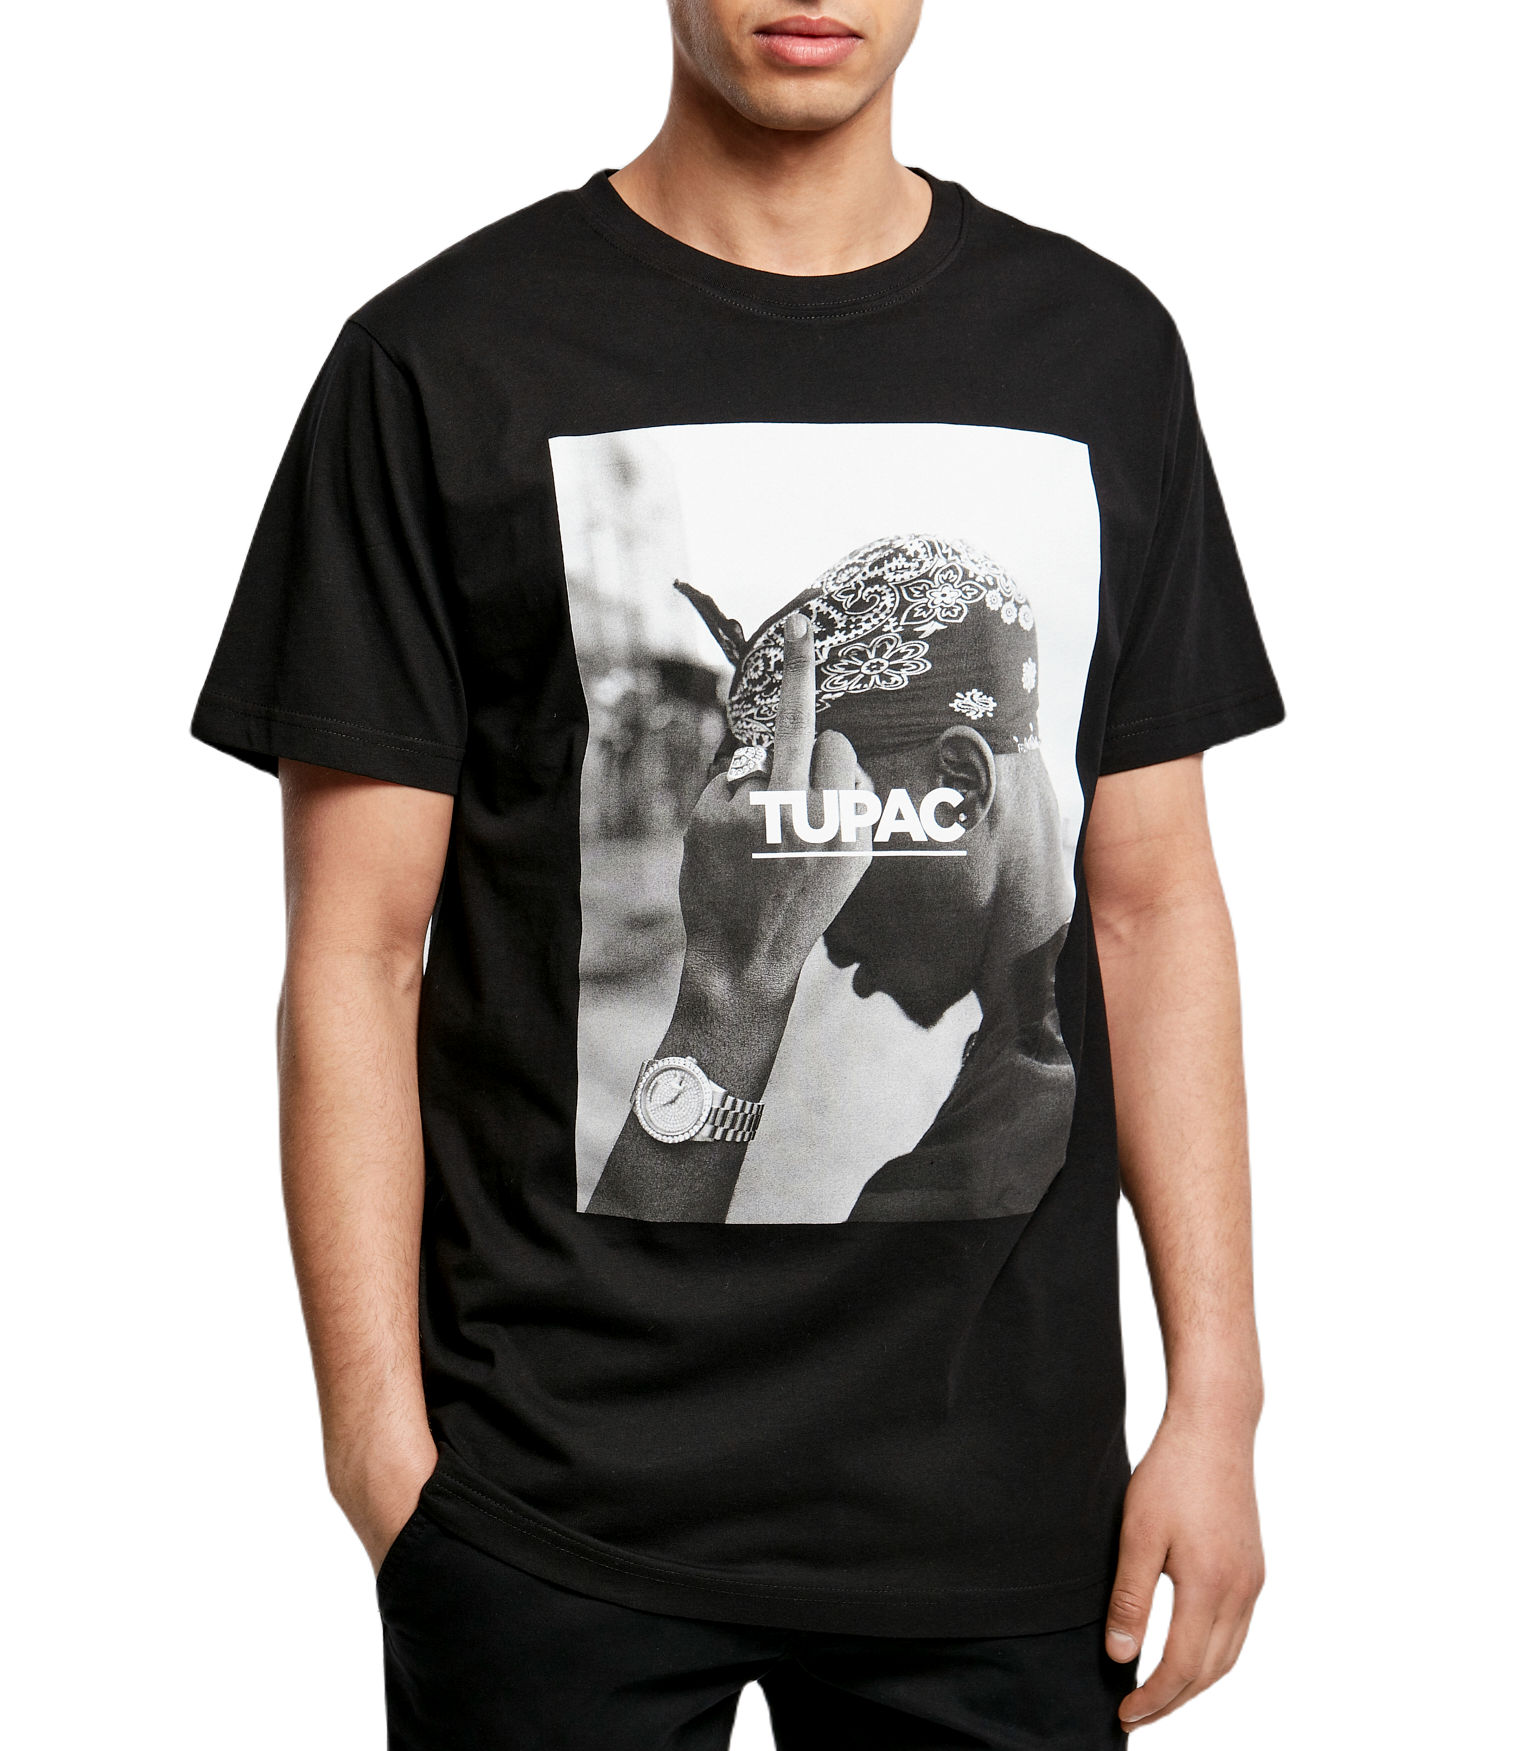 INSTO T-Shirt König Von Rap 2Pac Gedruckt Unterhemd Fitness Tragen Unisex Tragen Gemütlich/Schwarz/M 